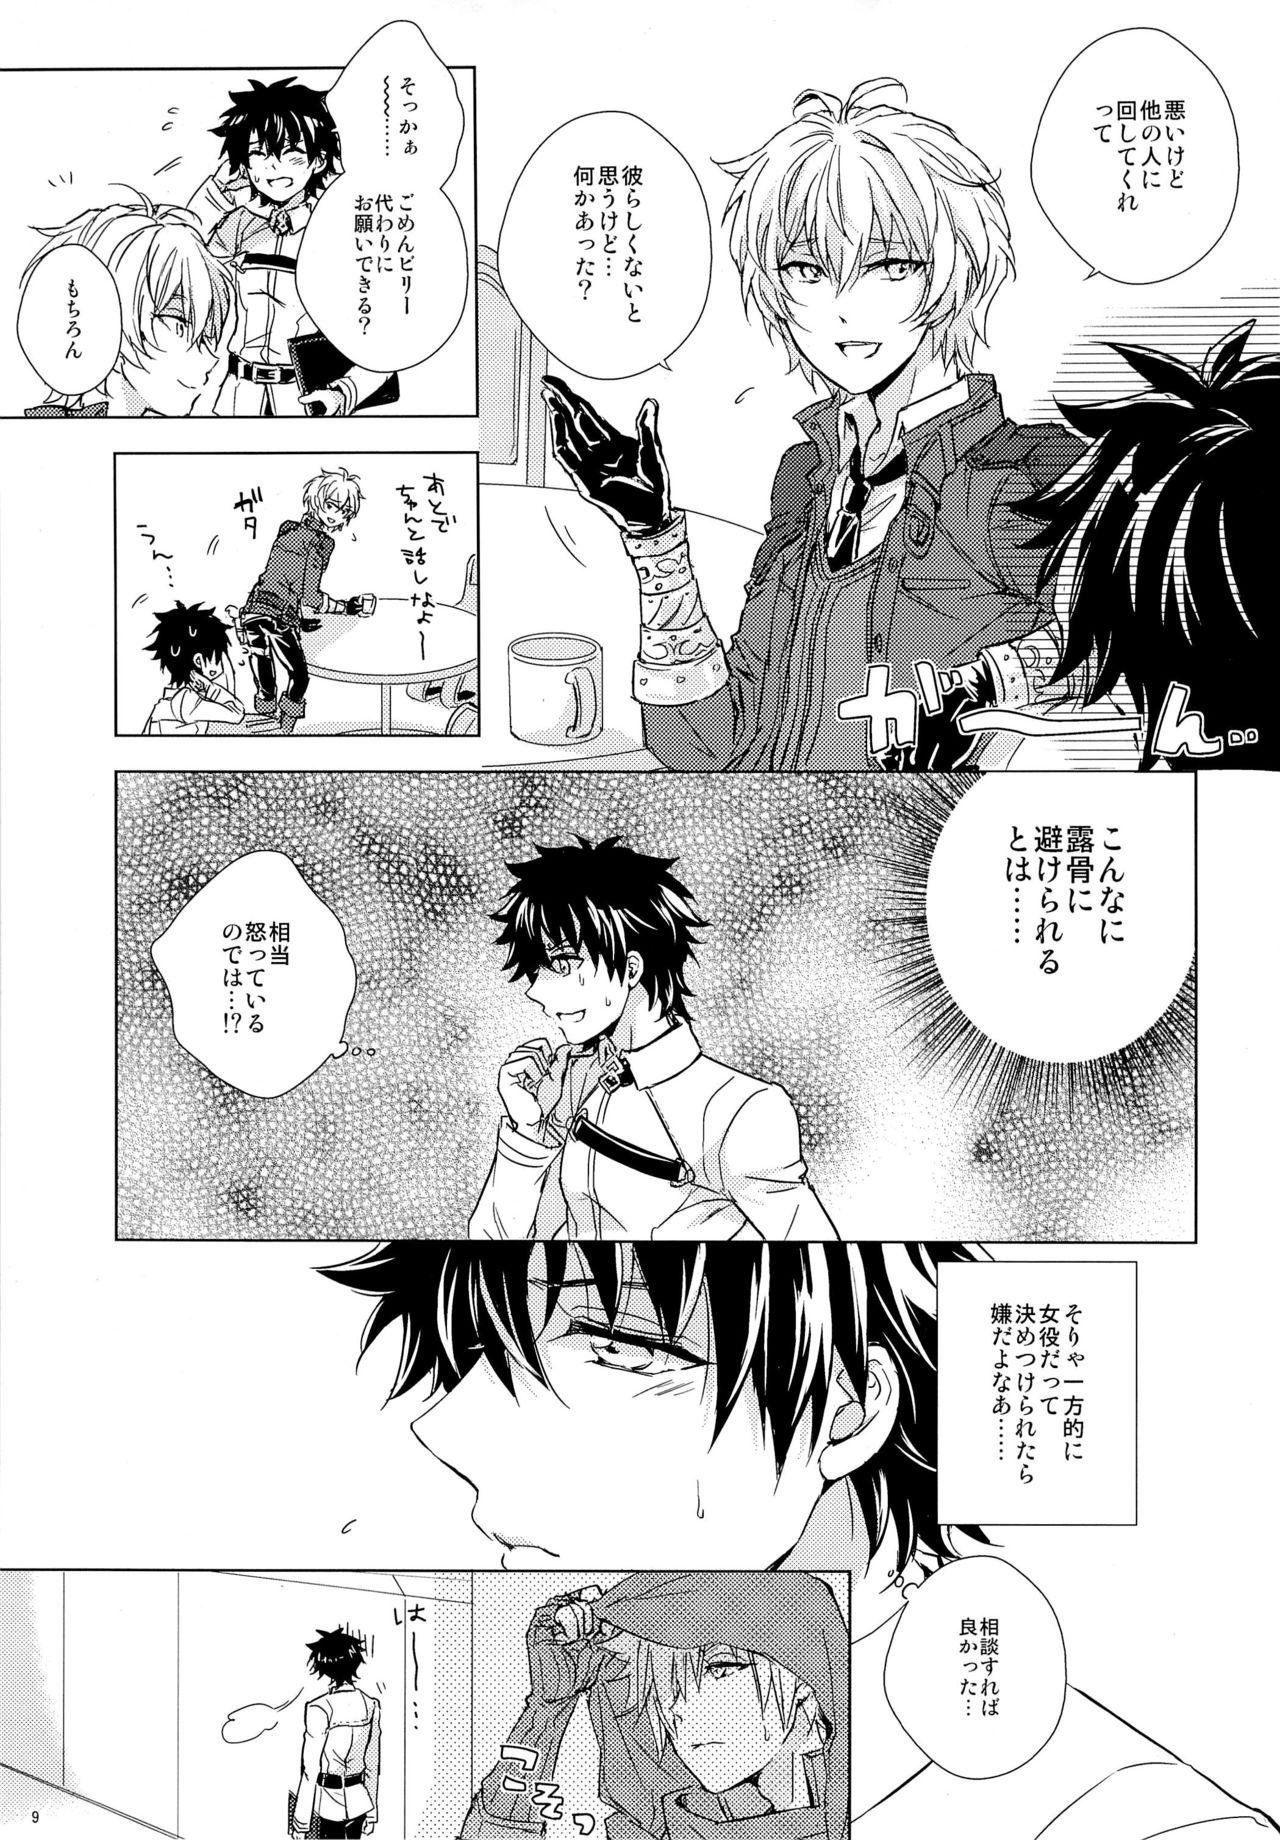 Novinho Kizuna 10 ni Naru Made Shinai - Fate grand order Blow Job - Page 9